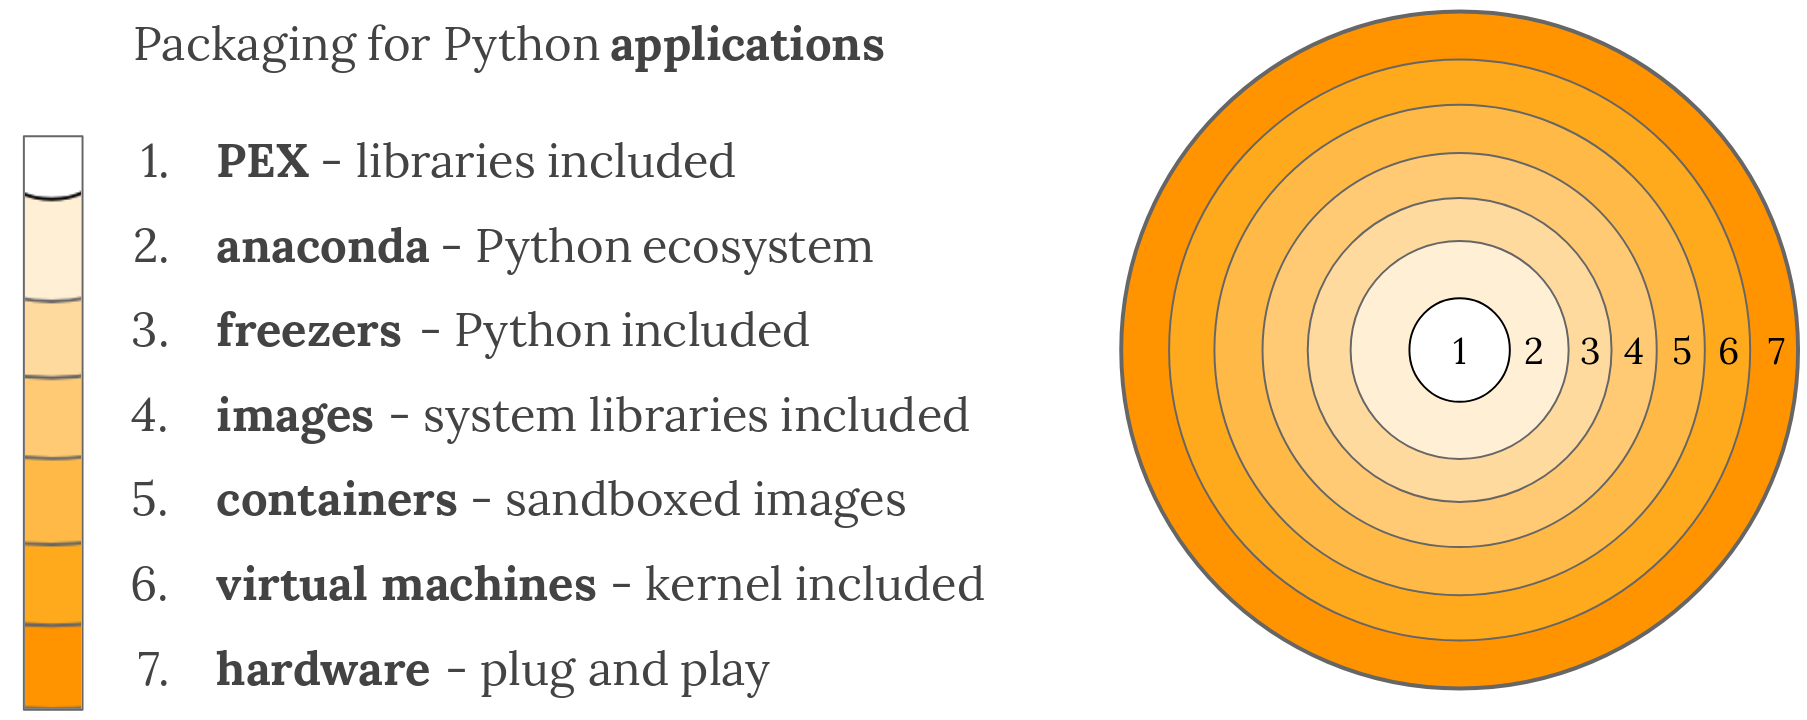 Um resumo de tecnologias usadas para empacotar aplicações Python.